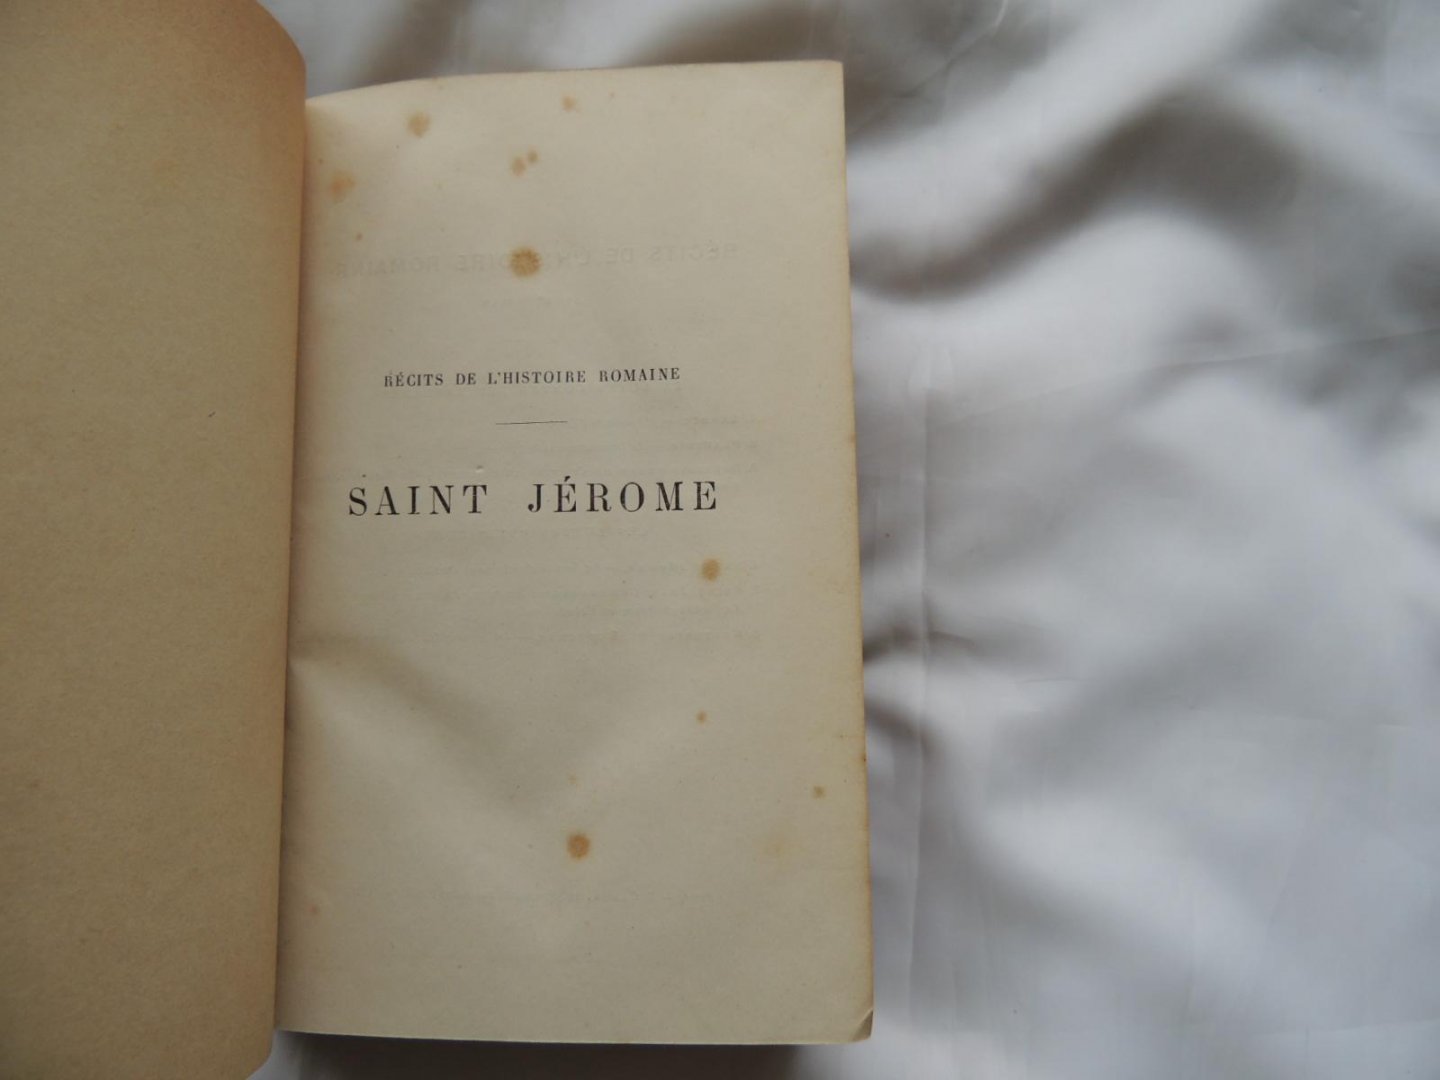 Amédée Thierry - Saint Jérome : La société chrétienne en occident - Récits de l'histoire romaine au V.e siècle